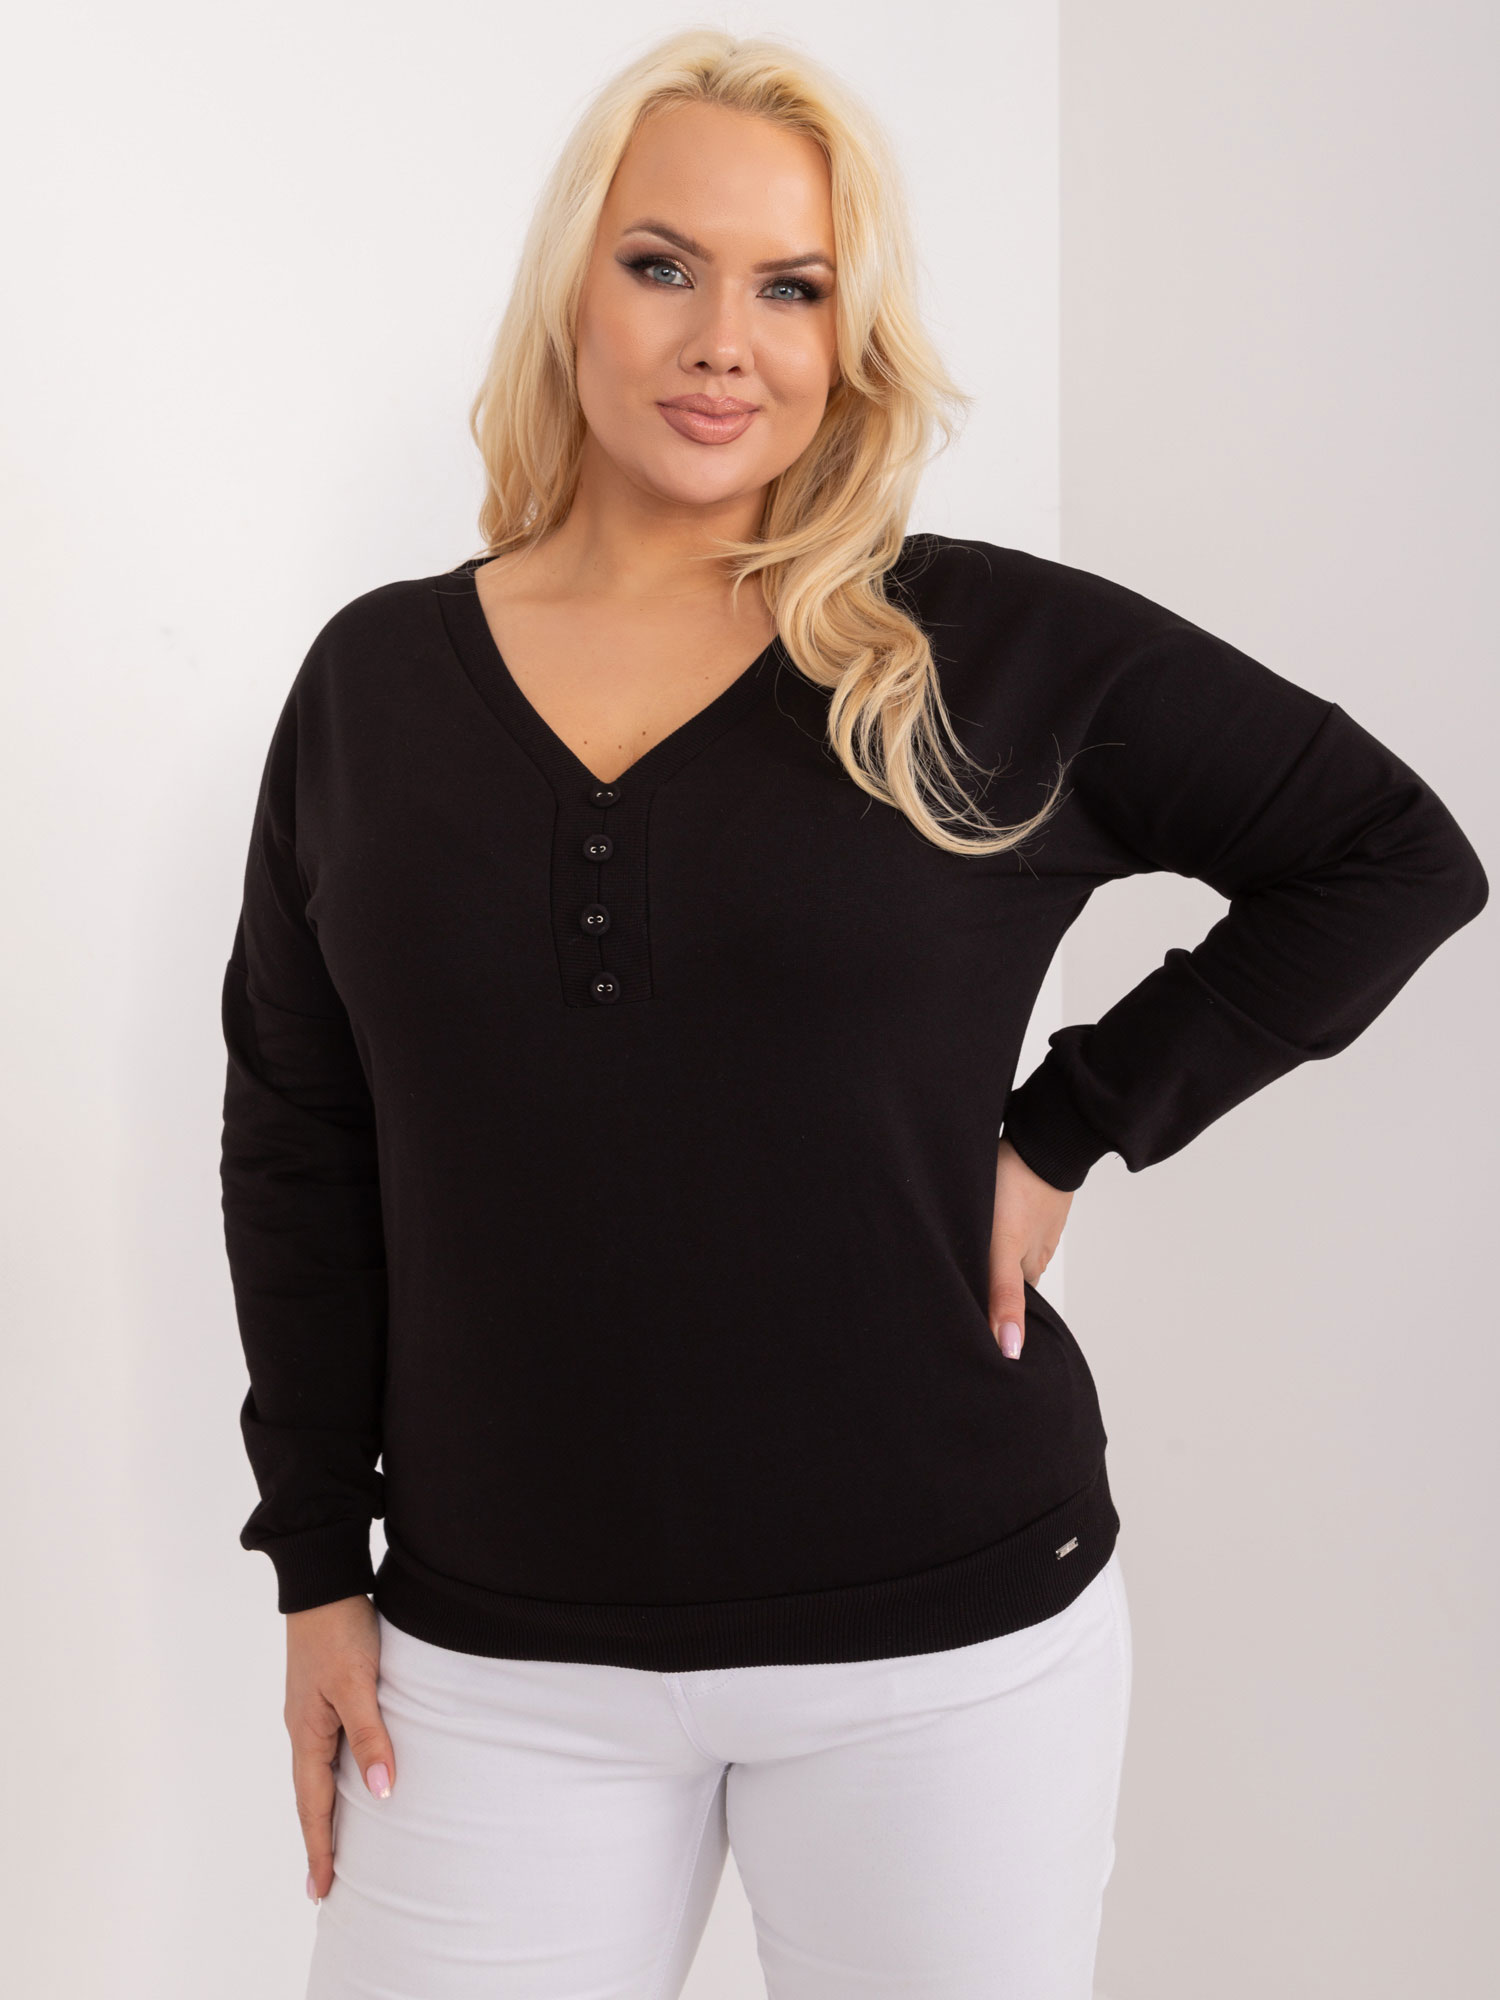 Black simple cotton blouse plus size